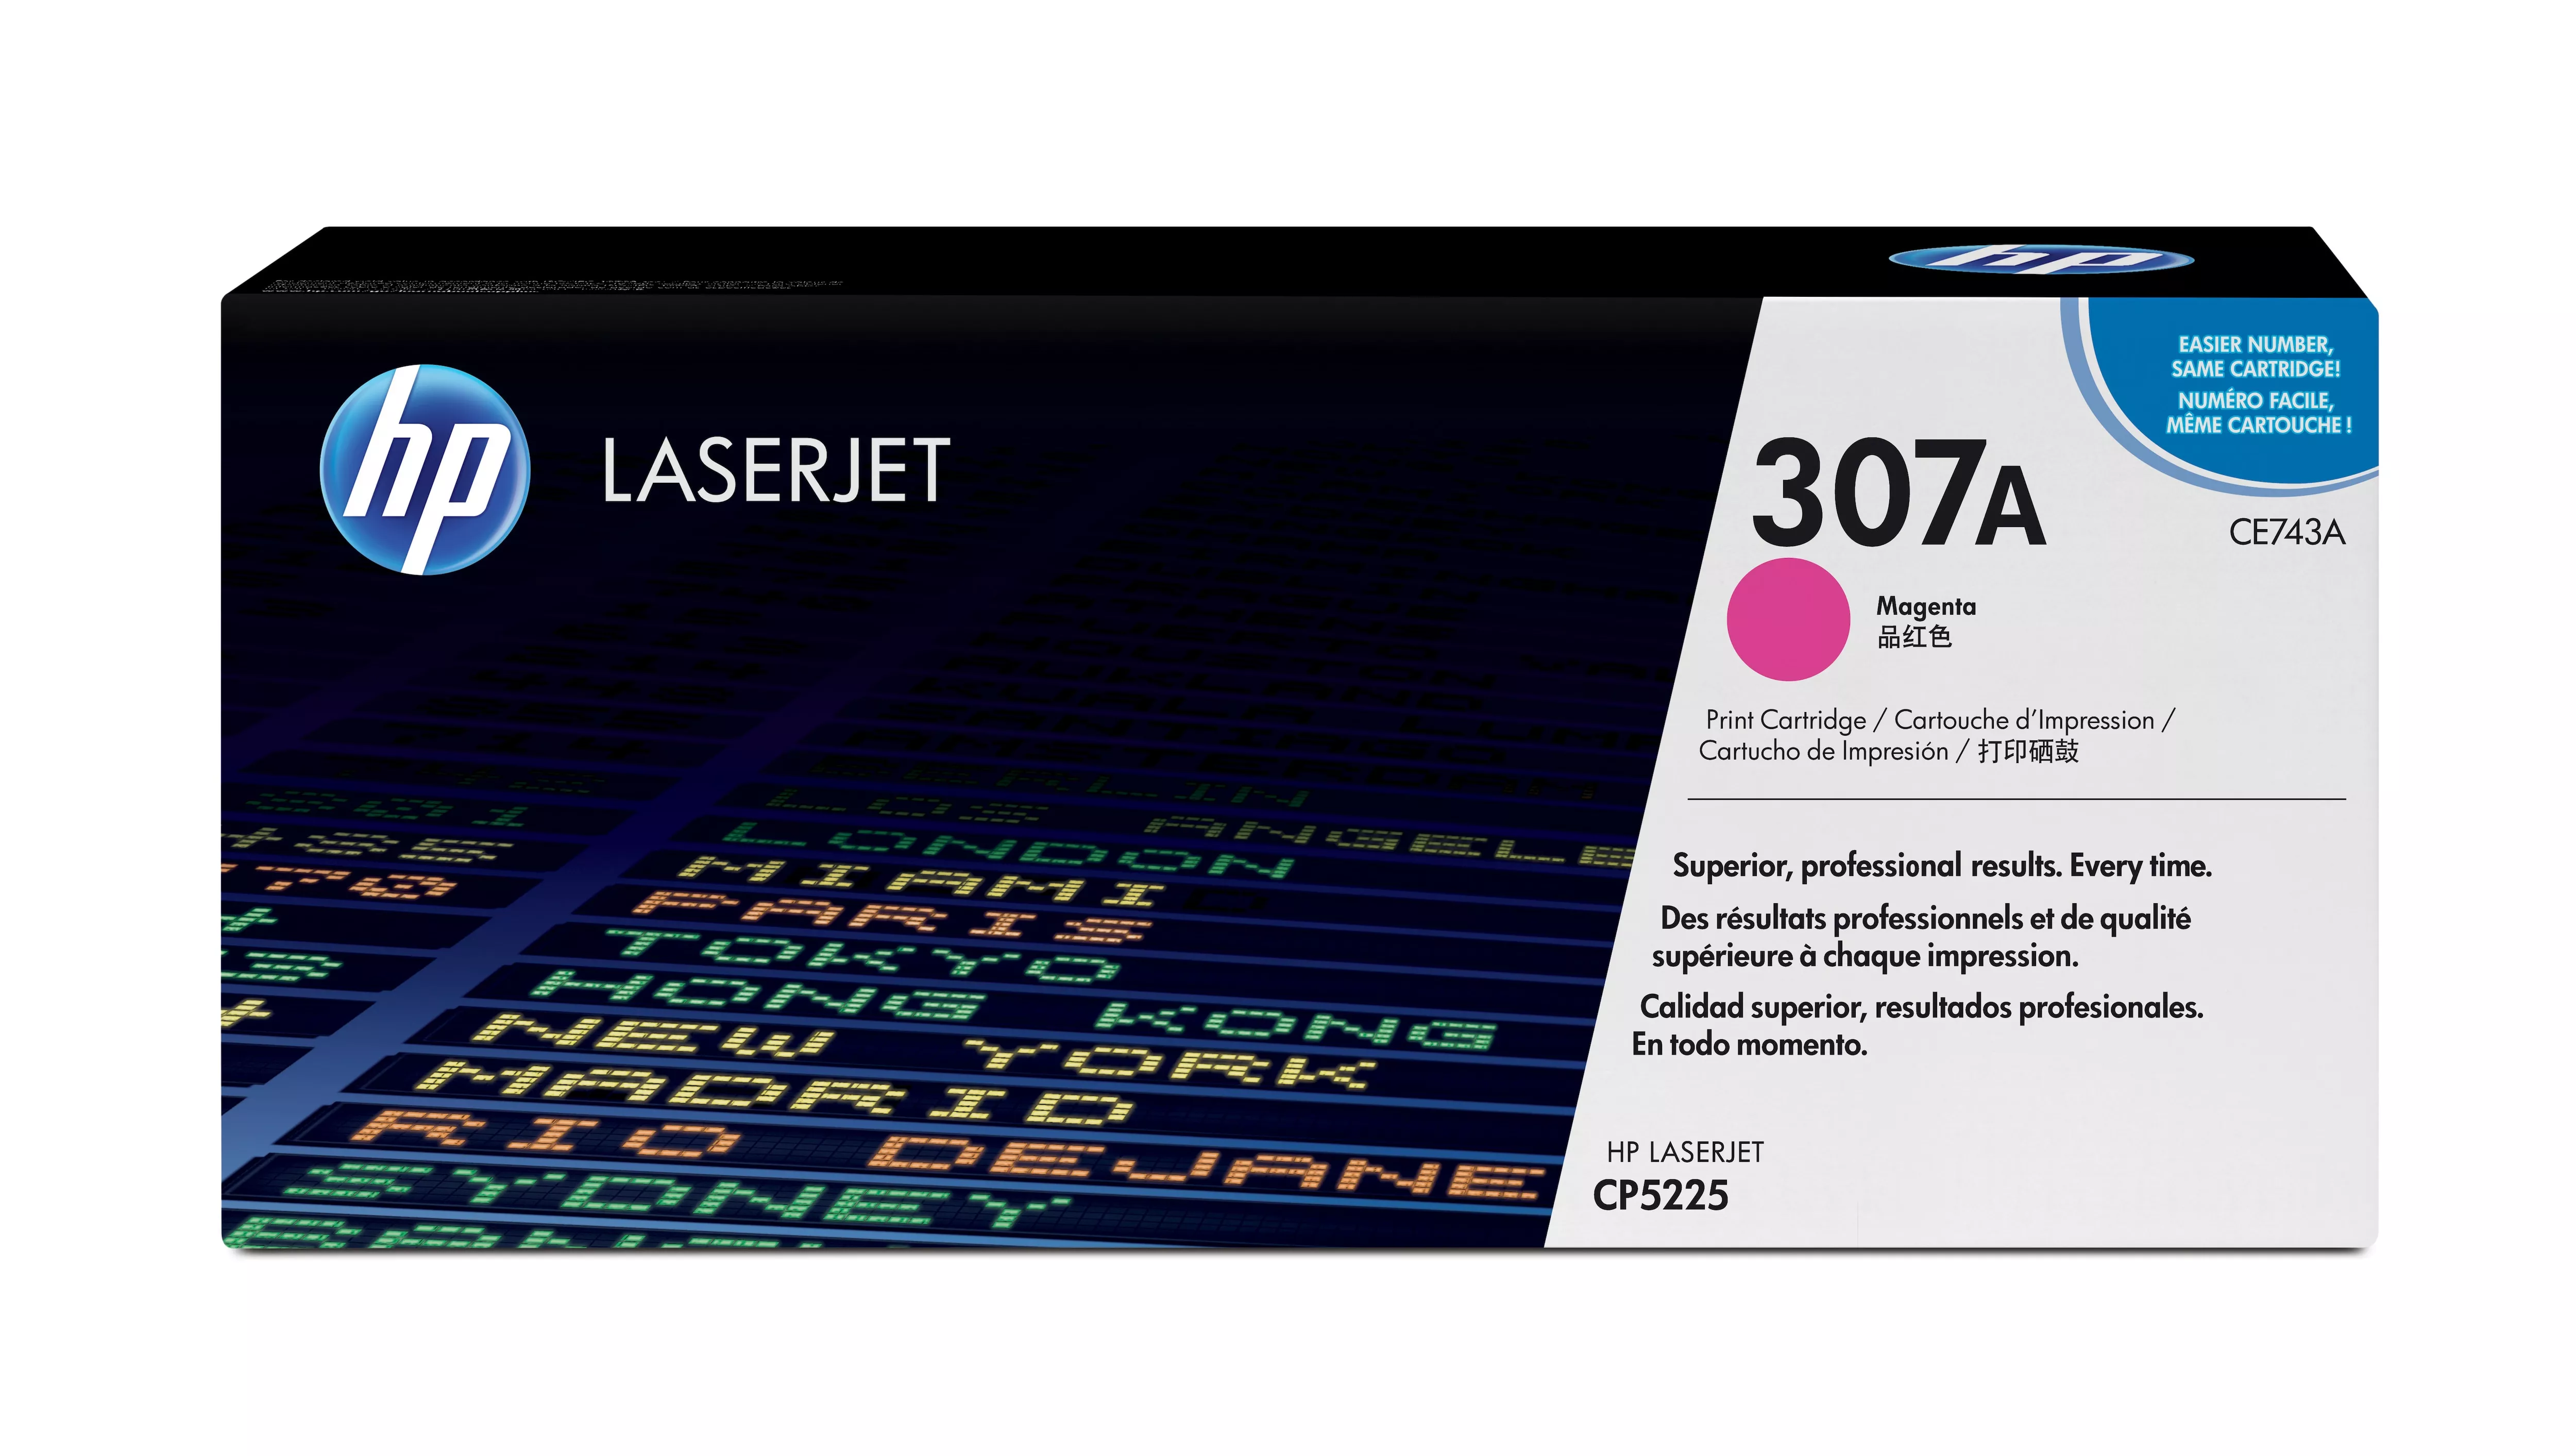 Achat Toner HP original Colour LaserJet CE743A Toner cartridge magenta sur hello RSE